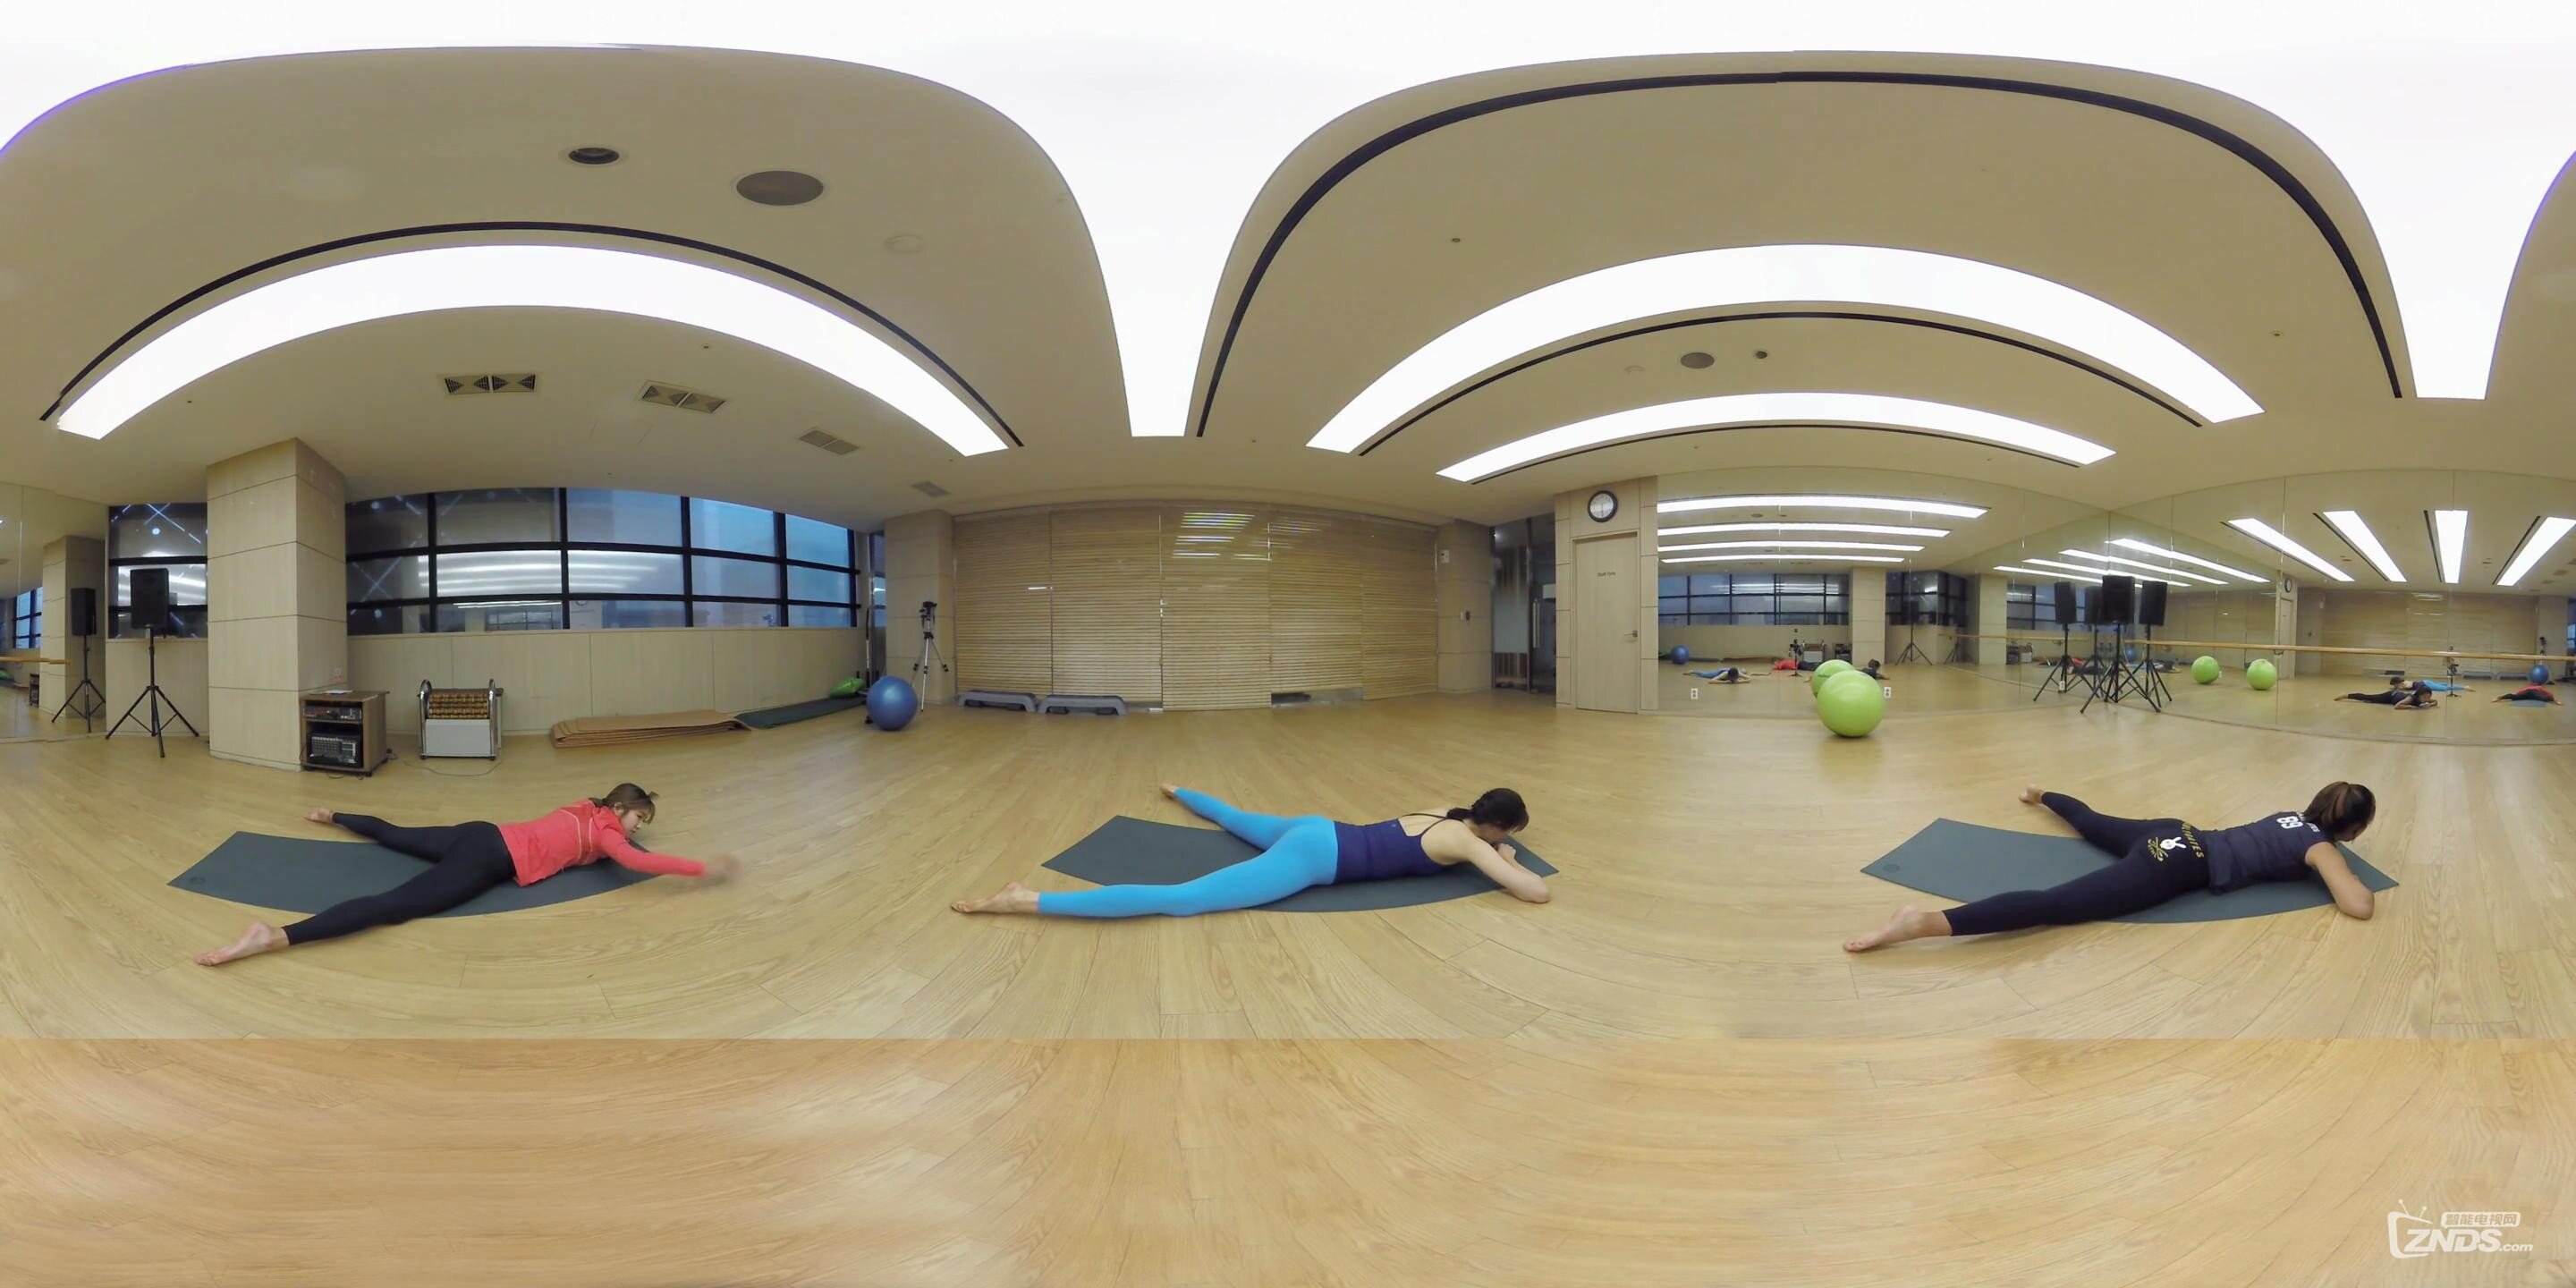 360_VR_全景_虚拟现实_韩国美女瑜伽教练教你瑜伽的正确姿势ep_3_20160923202245.JPG.jpg